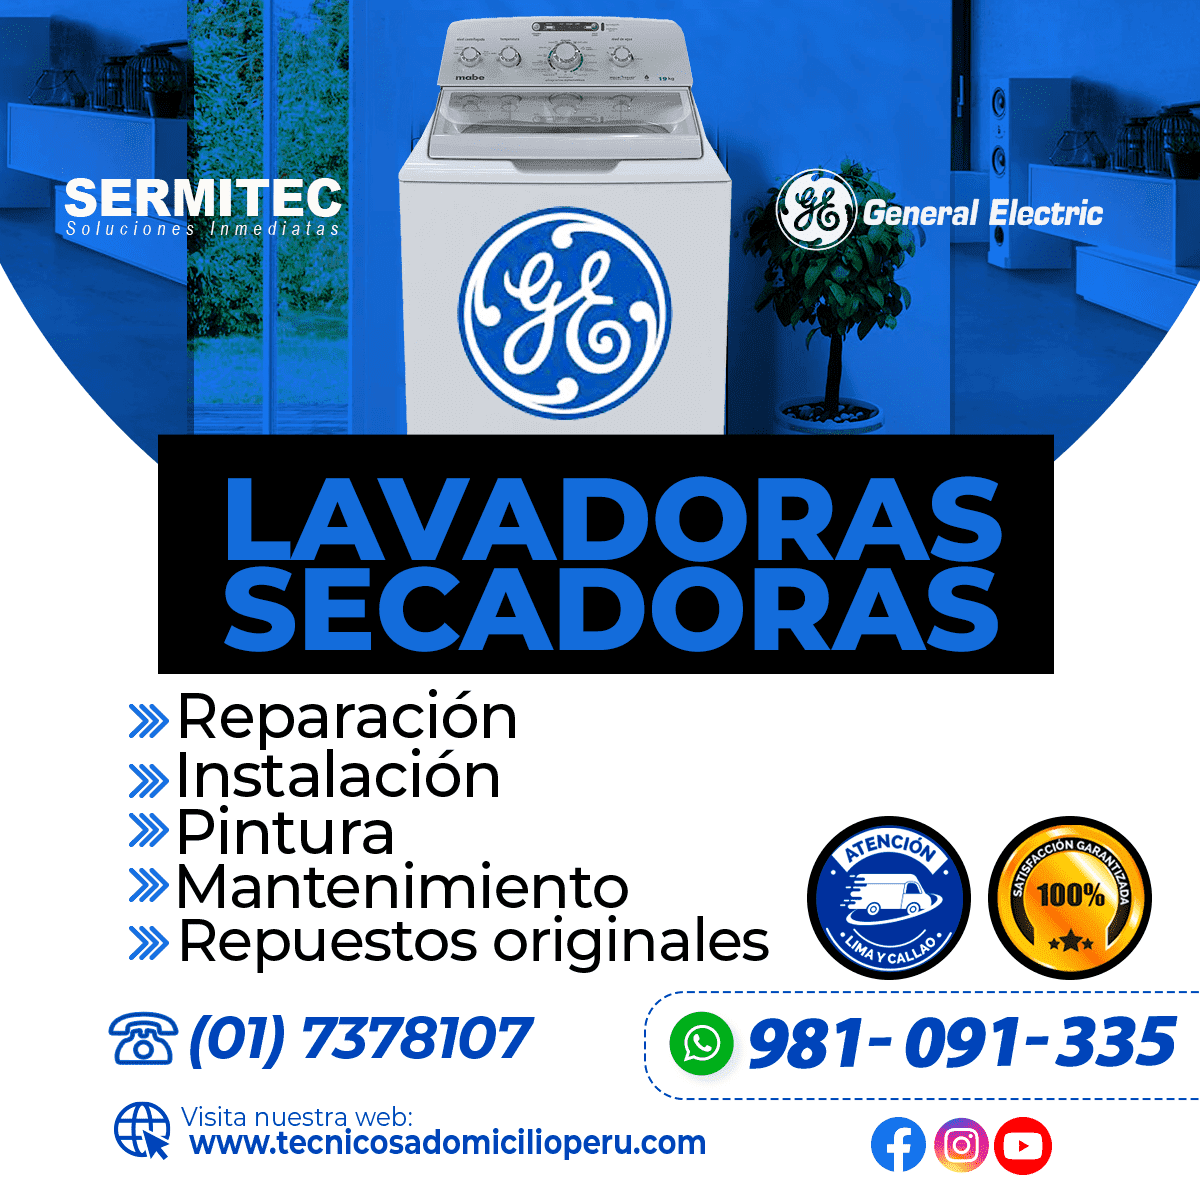 GENERAL ELECTRIC Reparación de Lavadoras 981091335 COMAS